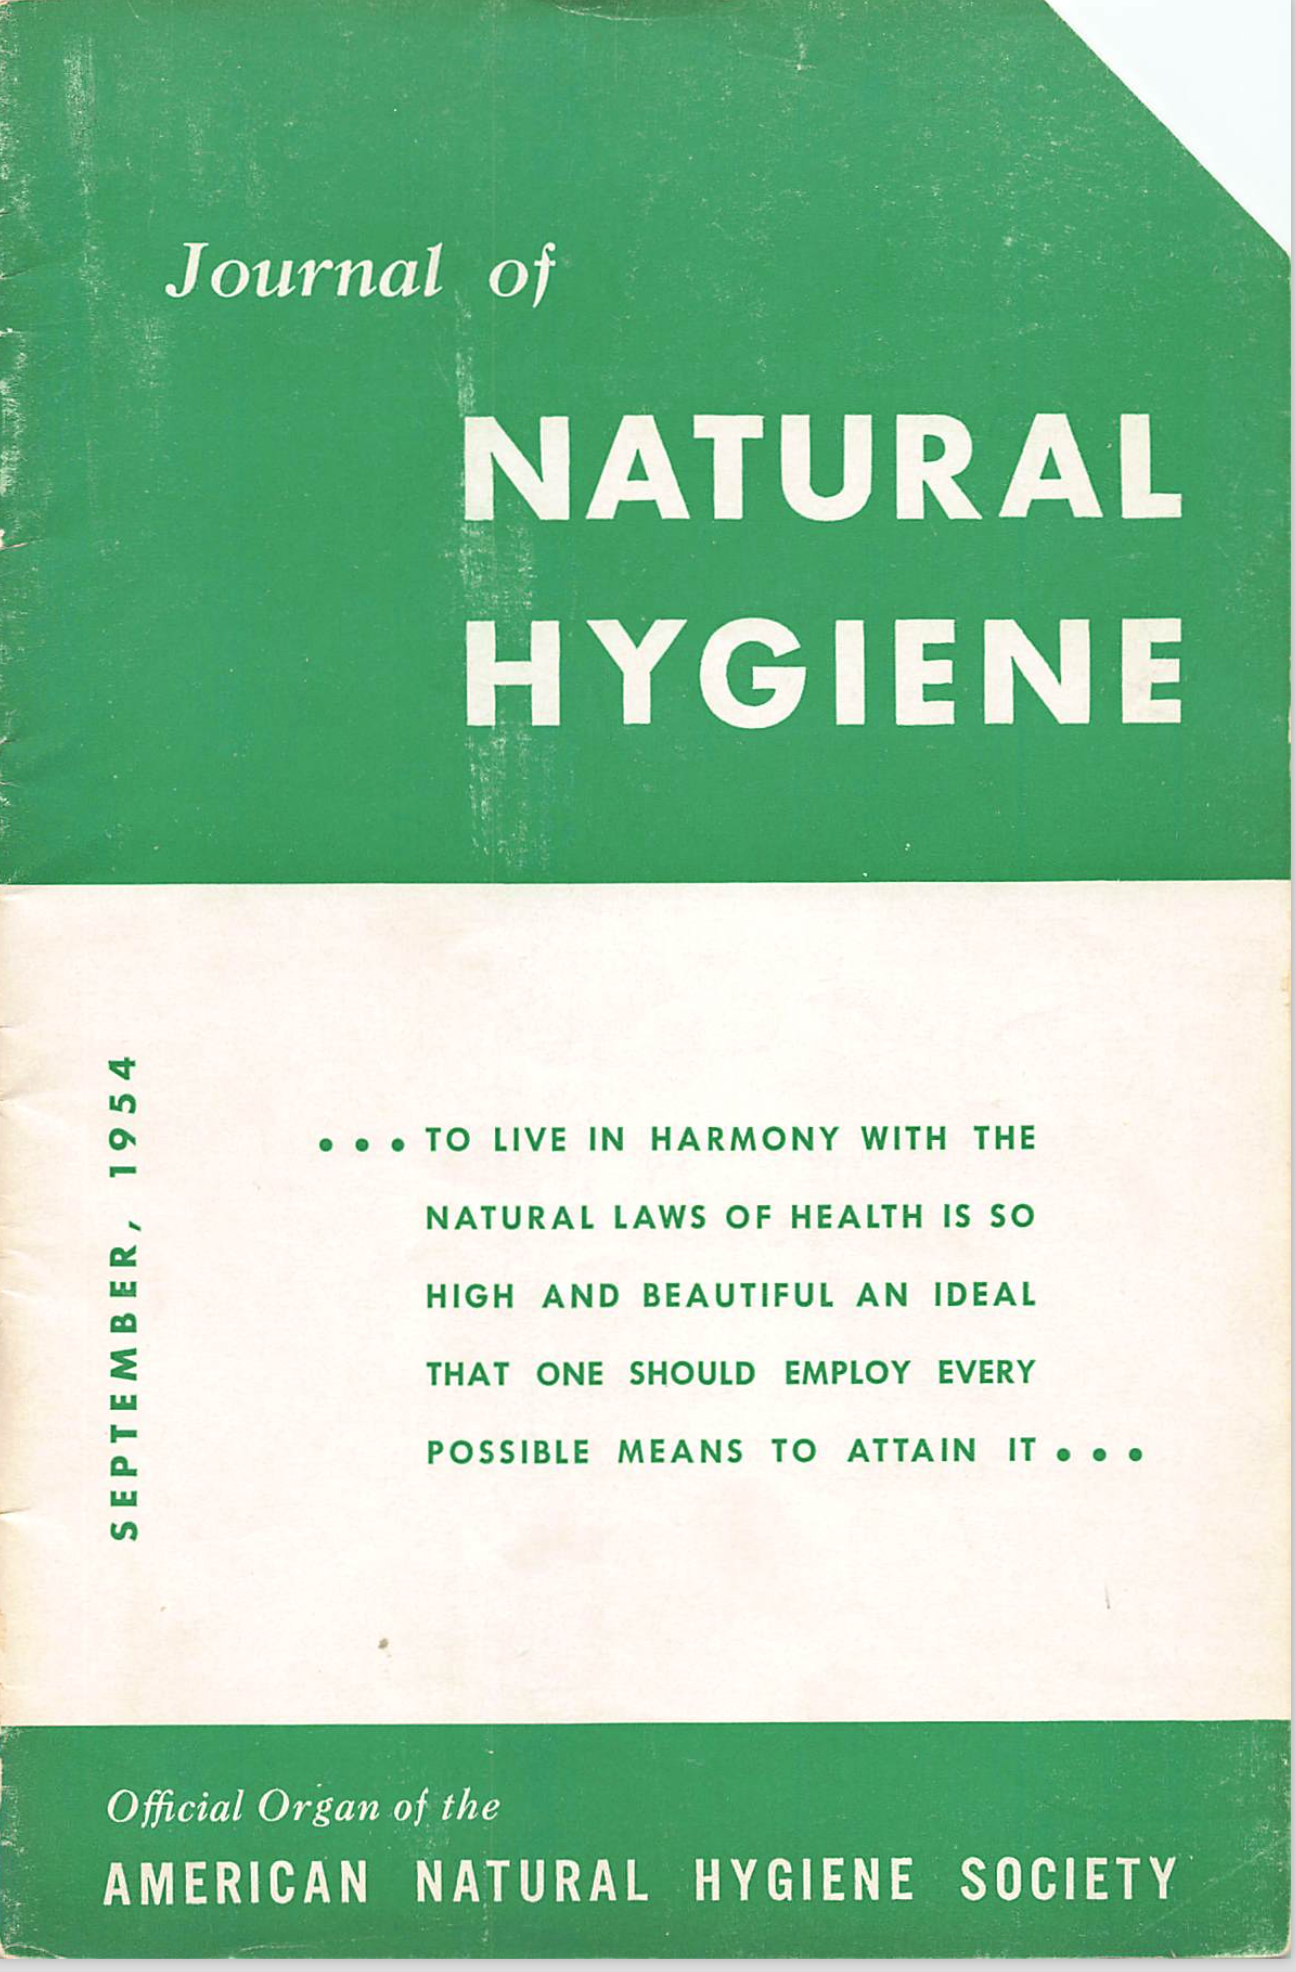 Journal of Natural Hygiene September 1954